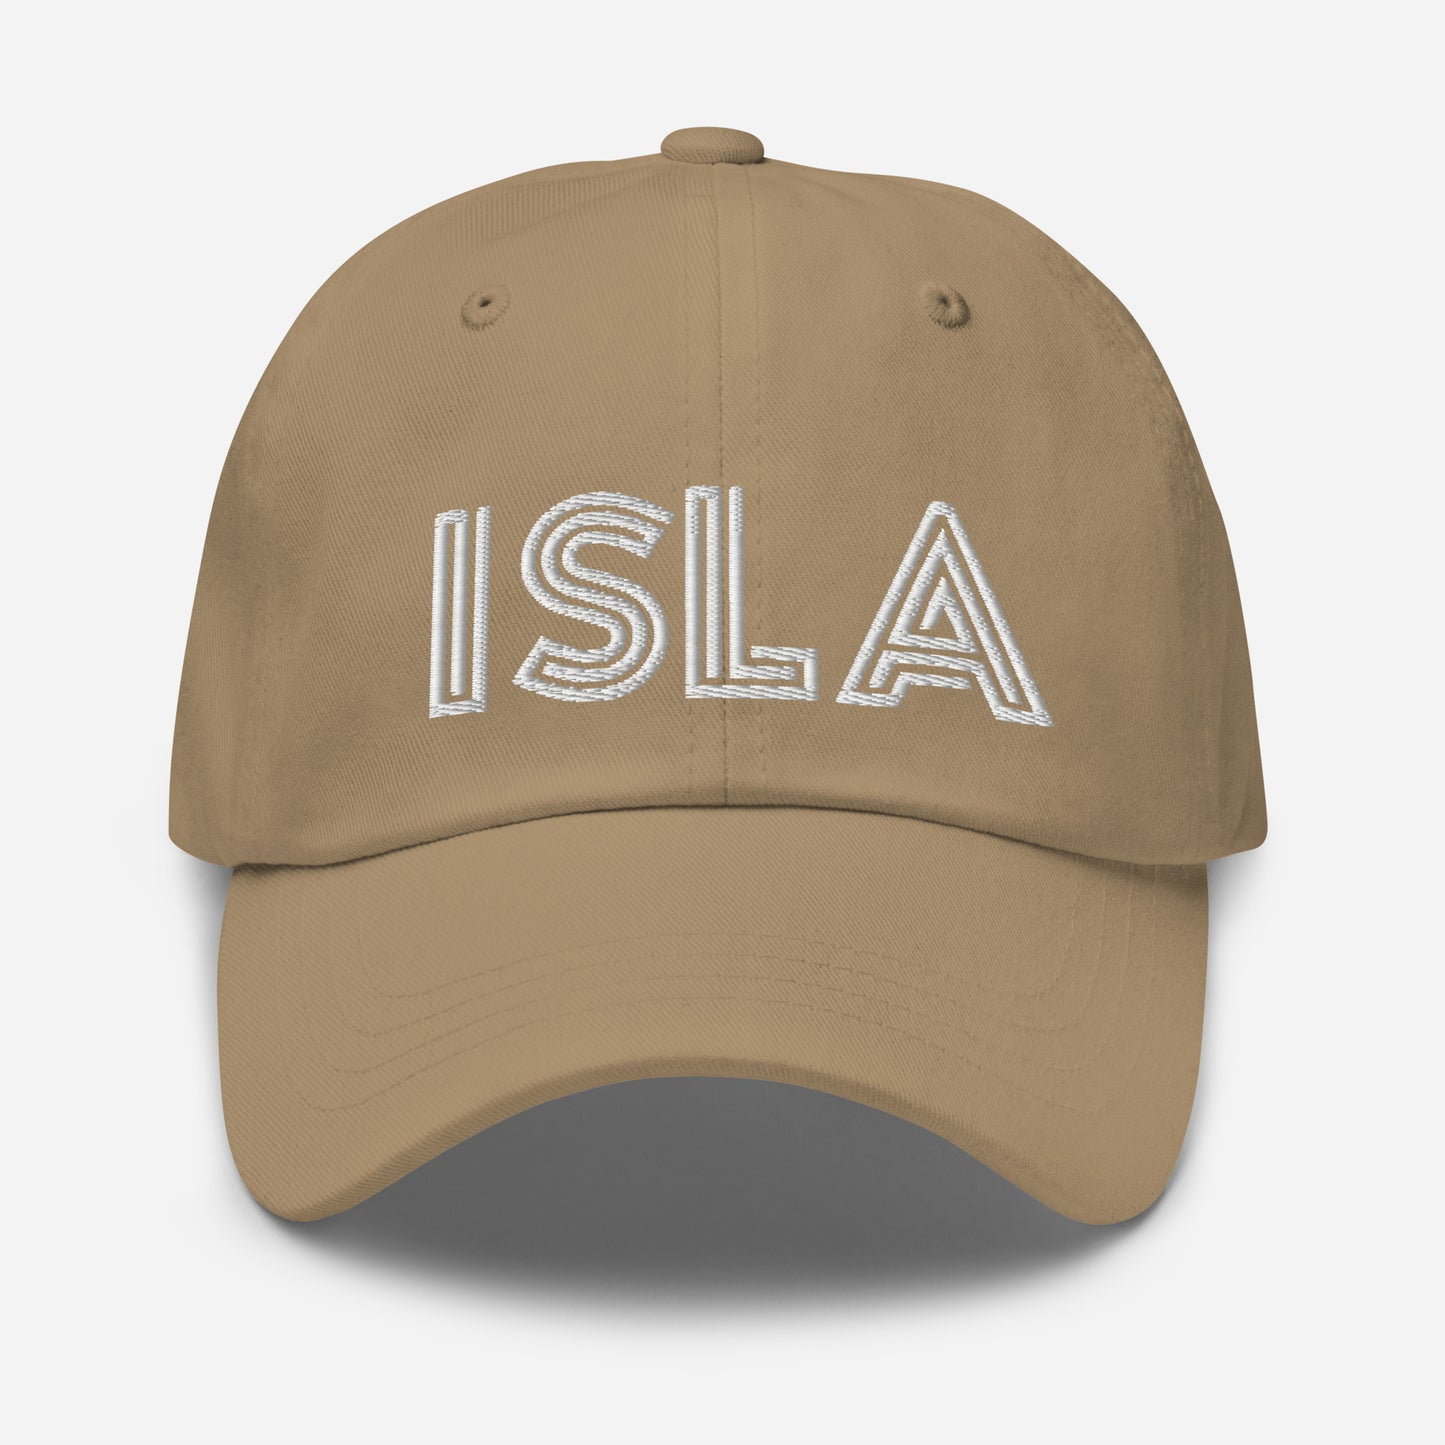 ISLA Dad Hat